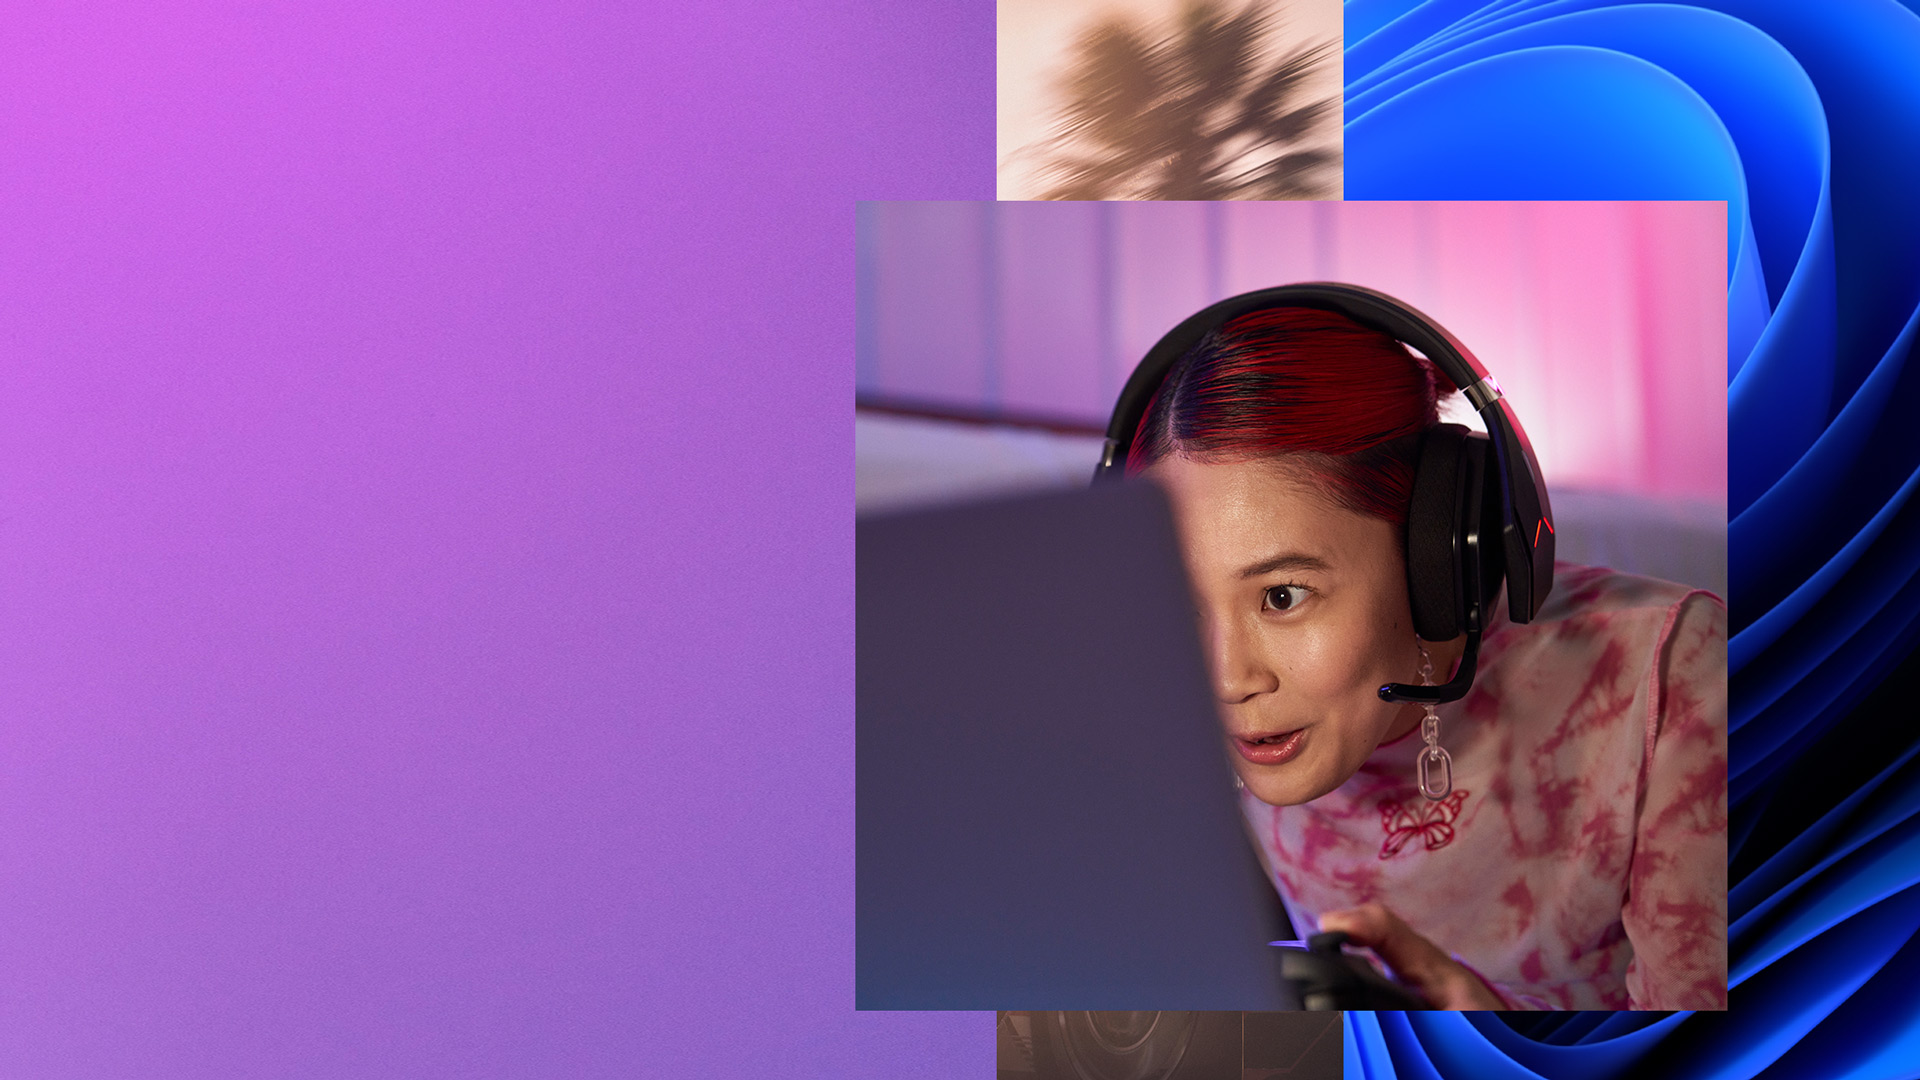 Kulaklık takan ve elinde oyun kumandası tutan bir kız, bilgisayar ekranına bakıyor